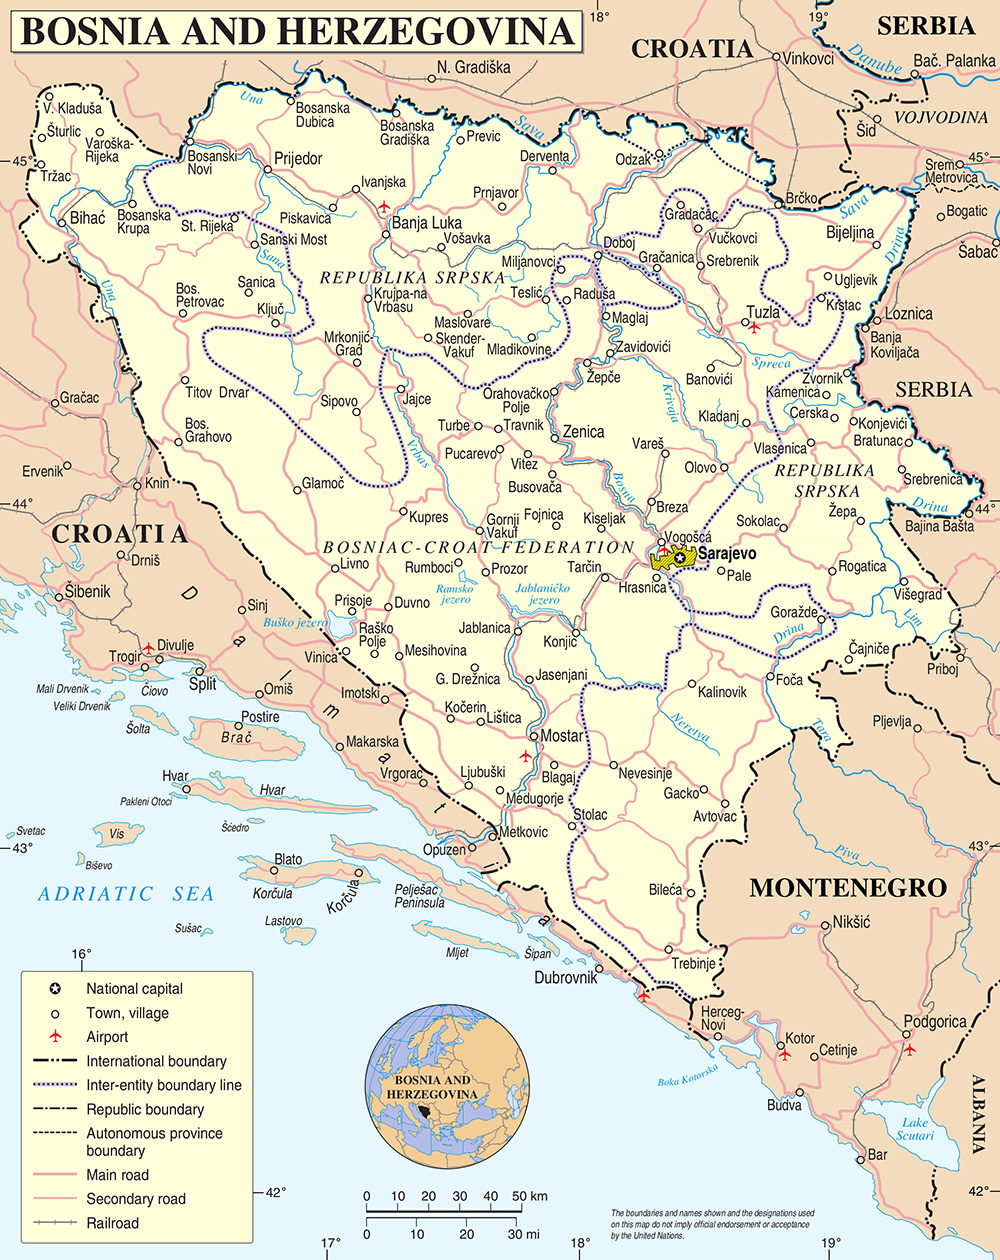 Mappa dettagliata con le città Bosnia ed Erzegovina